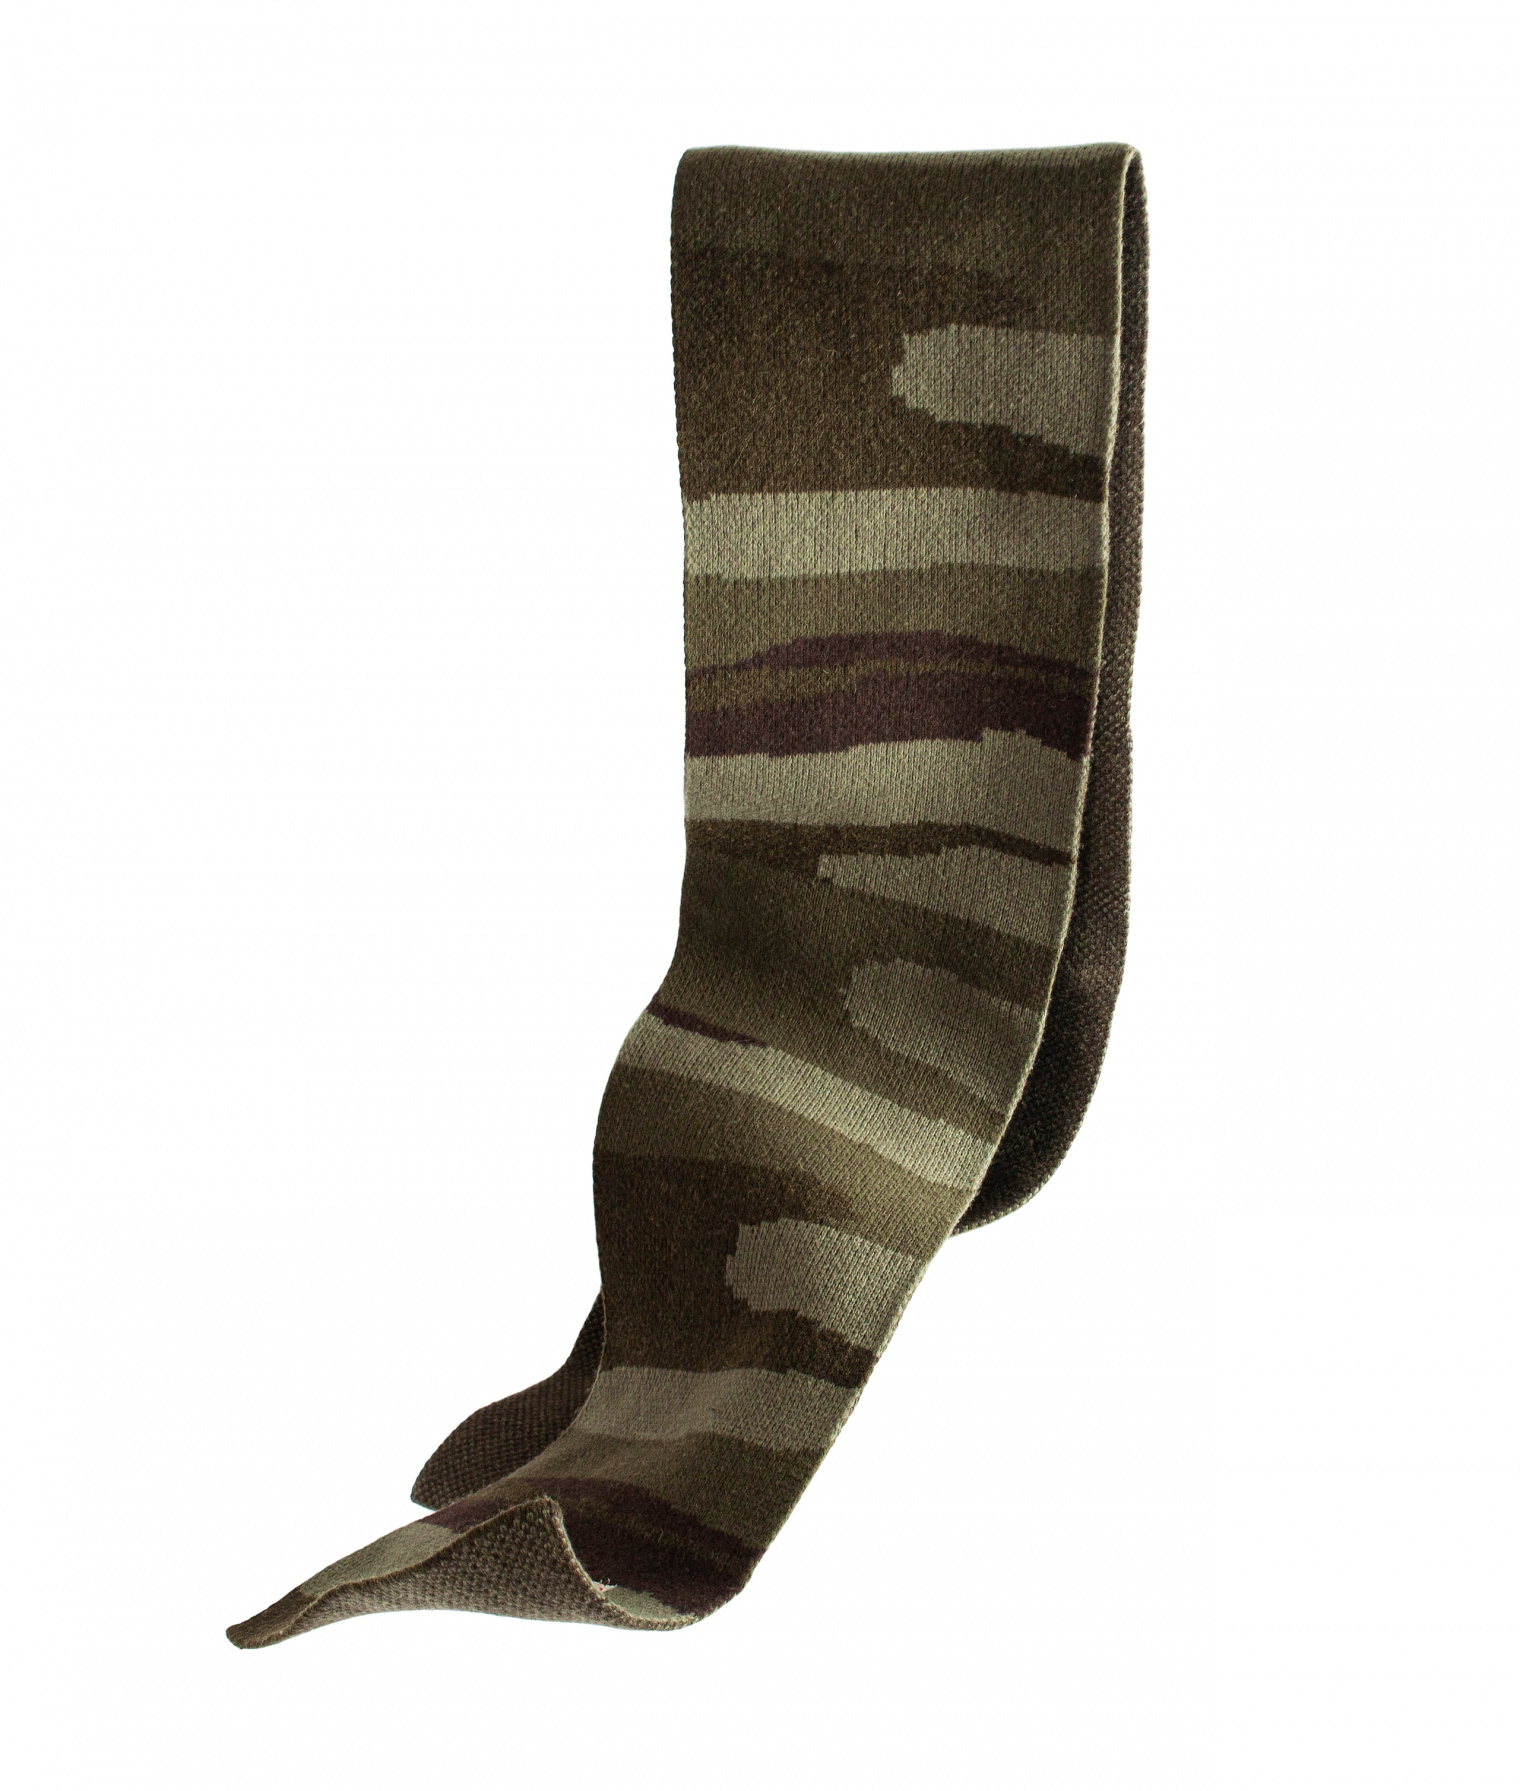 Greg Lauren Камуфляжный шарф из шерсти Paul Shark